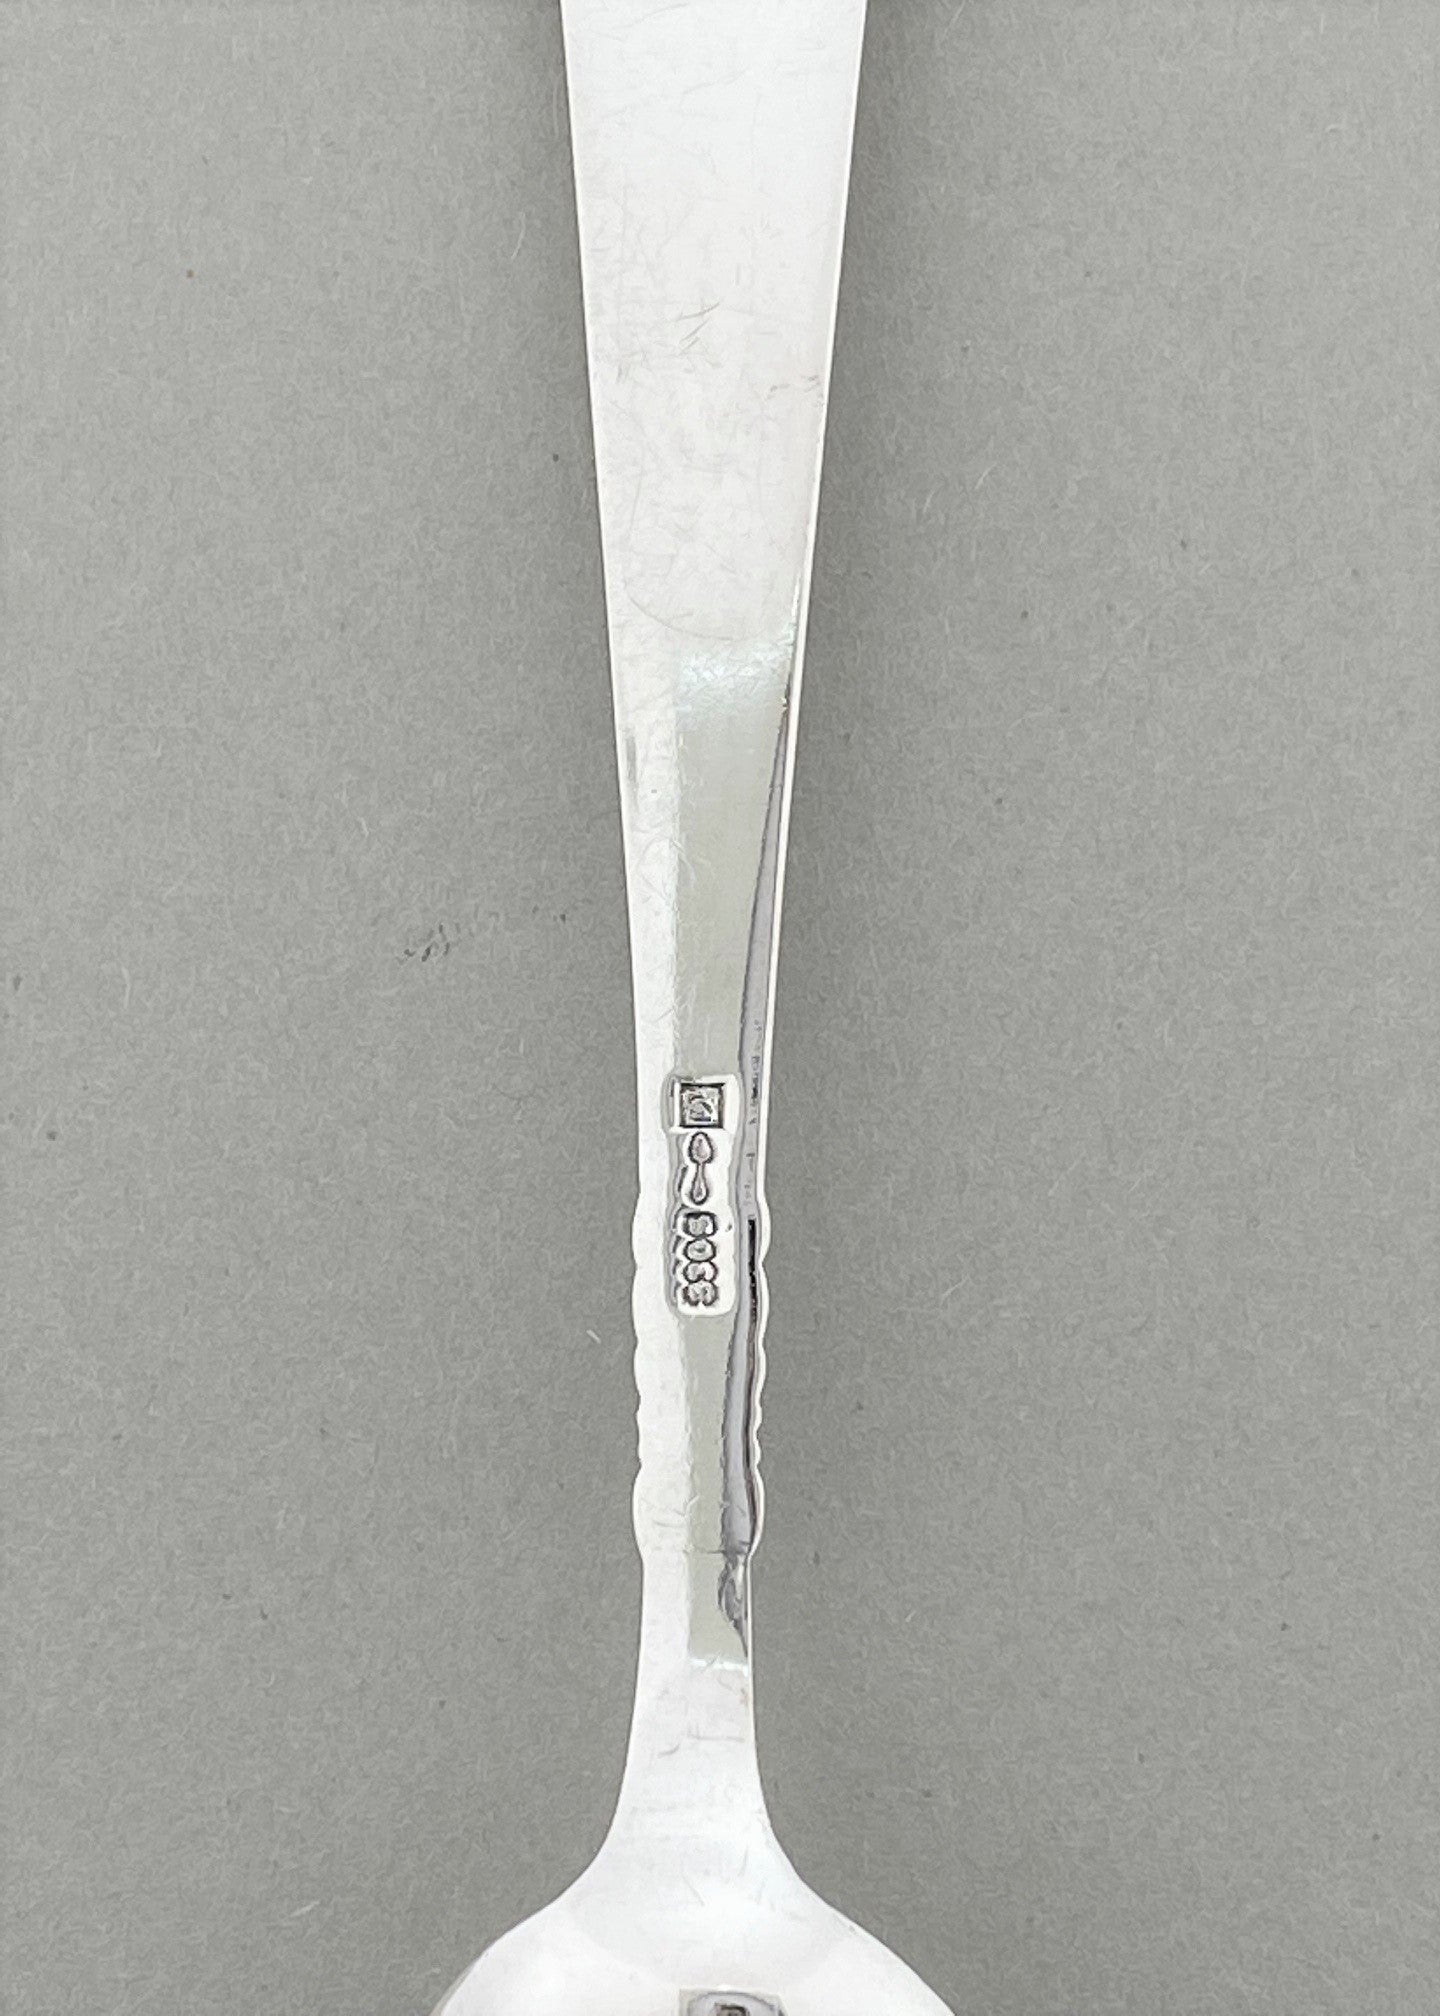 Vintage Odel teaspoon